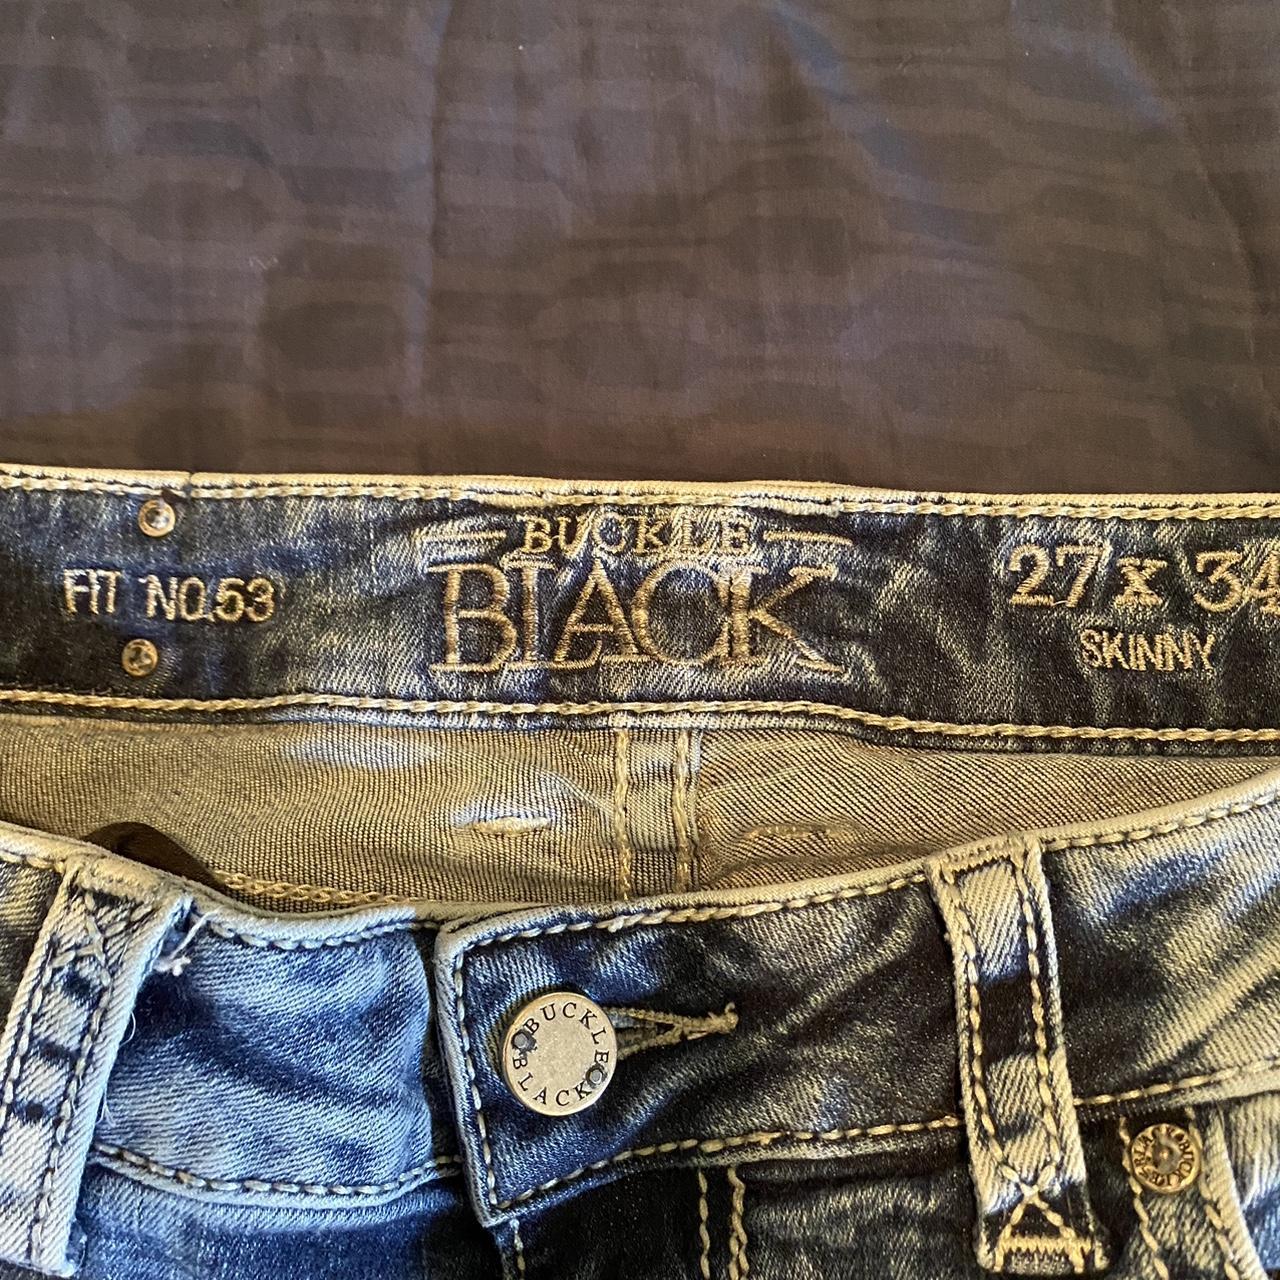 Buckle Black Women's Blue Jeans (5)